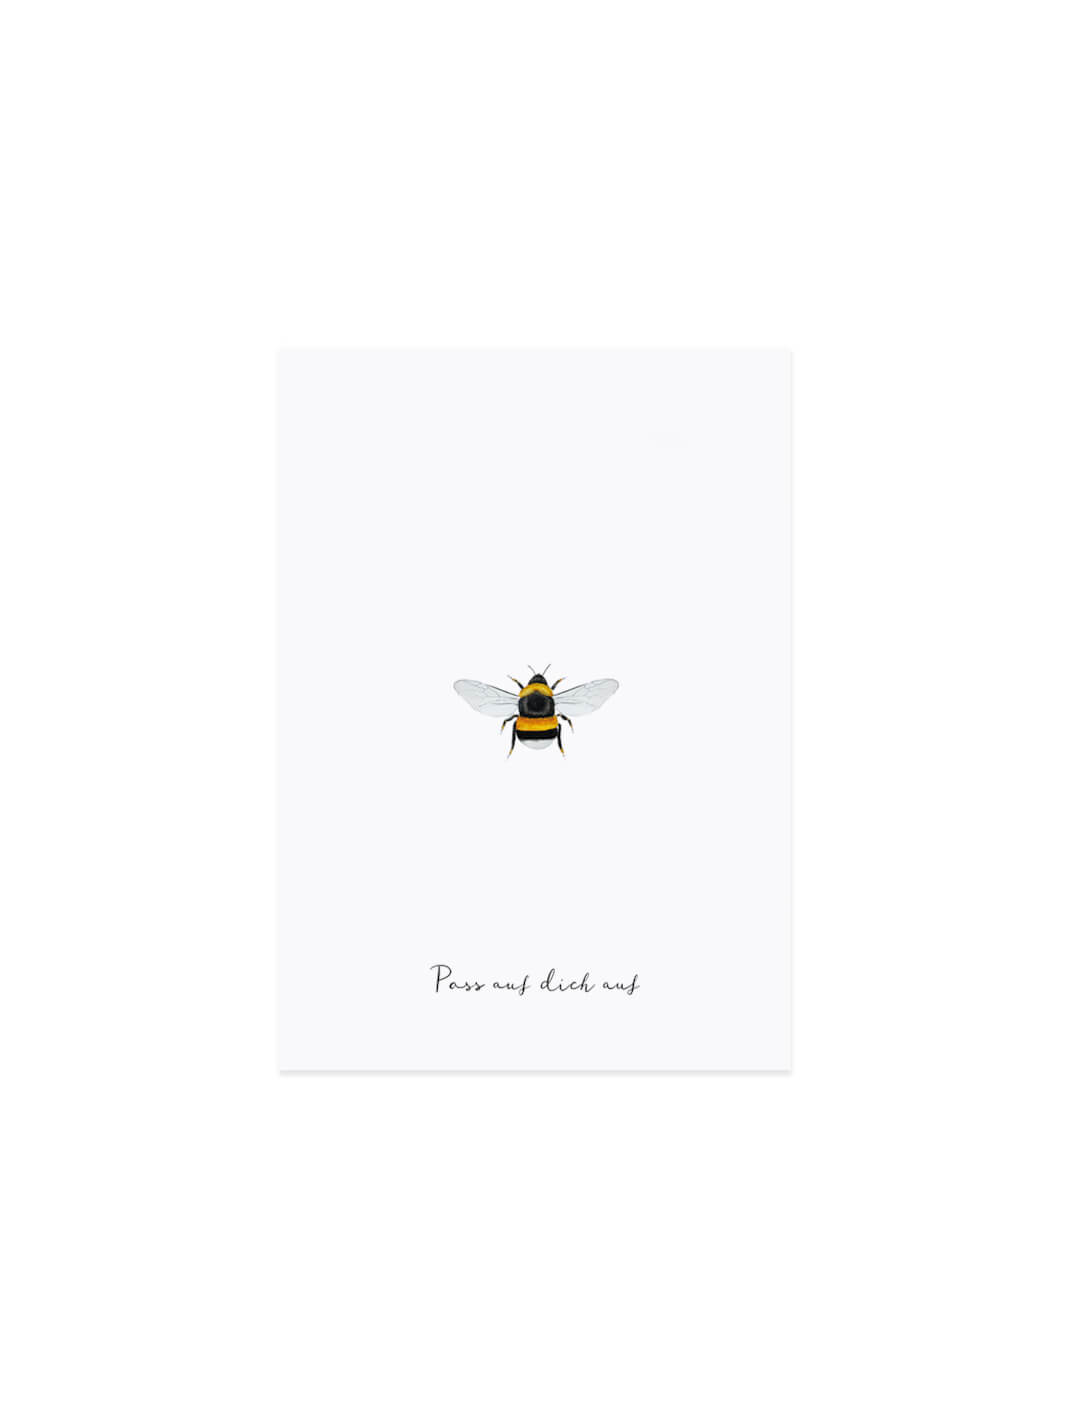 Pass auf dich auf Postkarte Biene